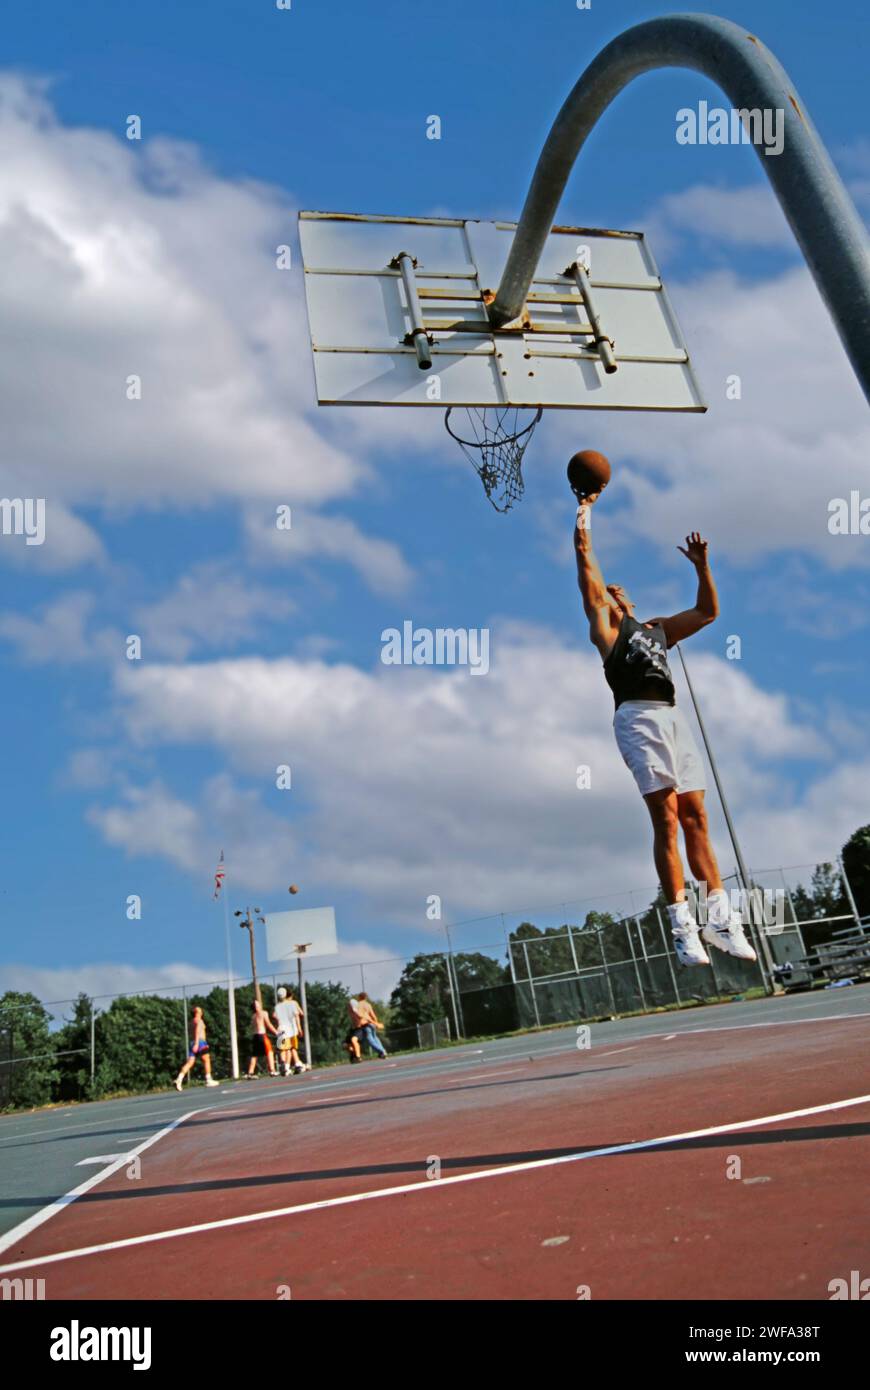 Un homme portant une tenue de basket-ball saute tout en tenant le ballon de basket-ball afin de l'enfoncer dans le cerceau. Banque D'Images